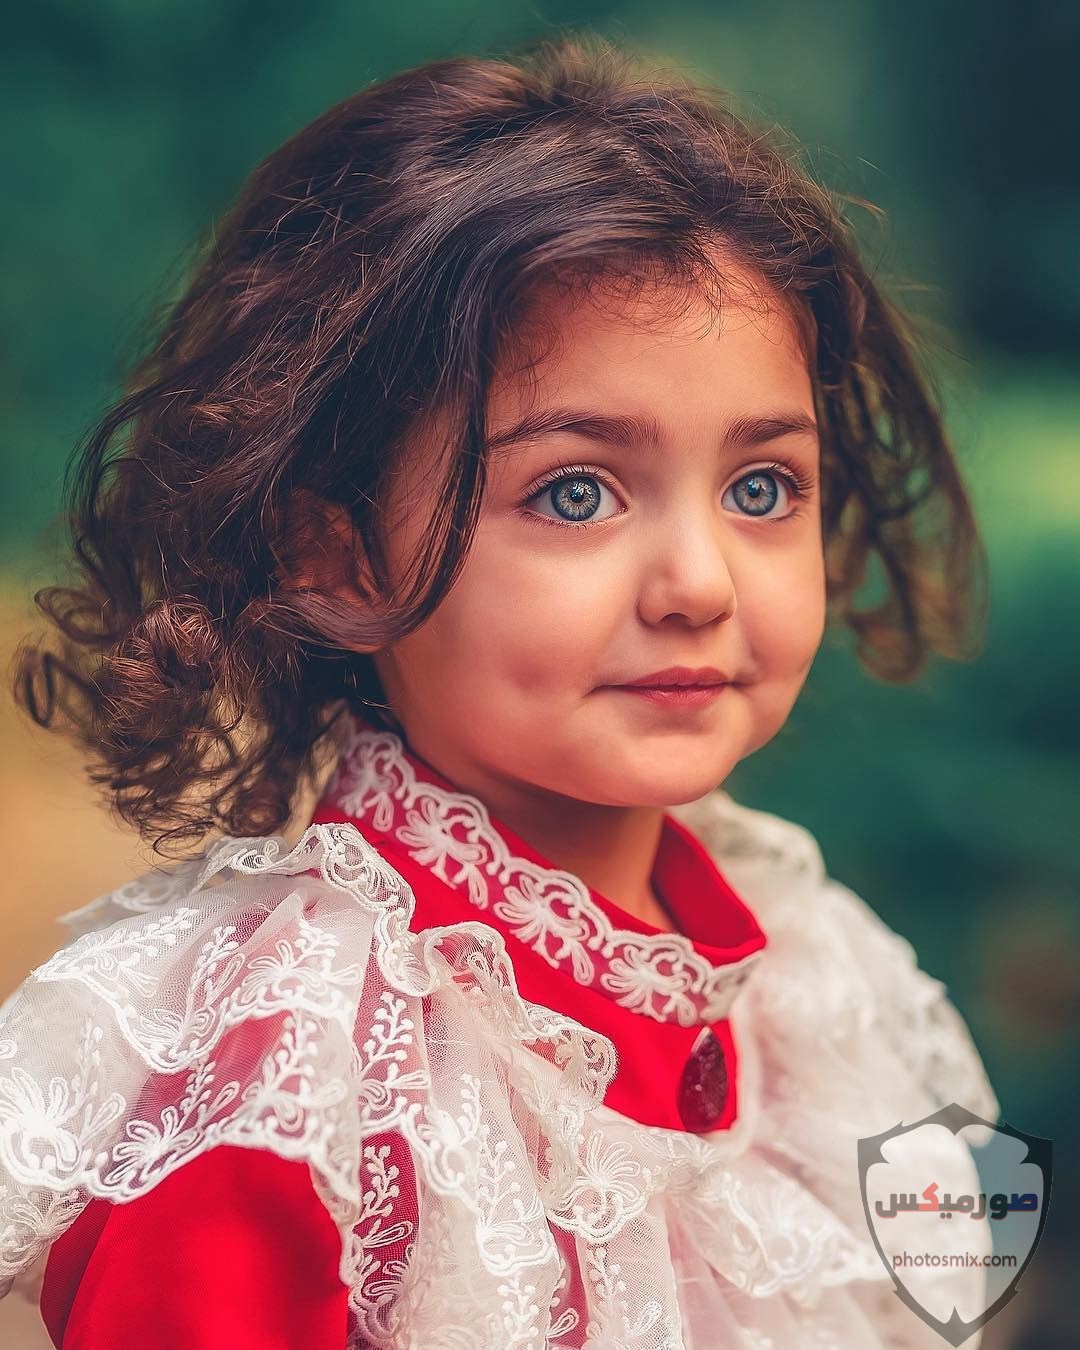 صور اطفال 2021 تحميل اكثر من 100 صور اطفال جميلة صور اطفال روعة 2020 49 1